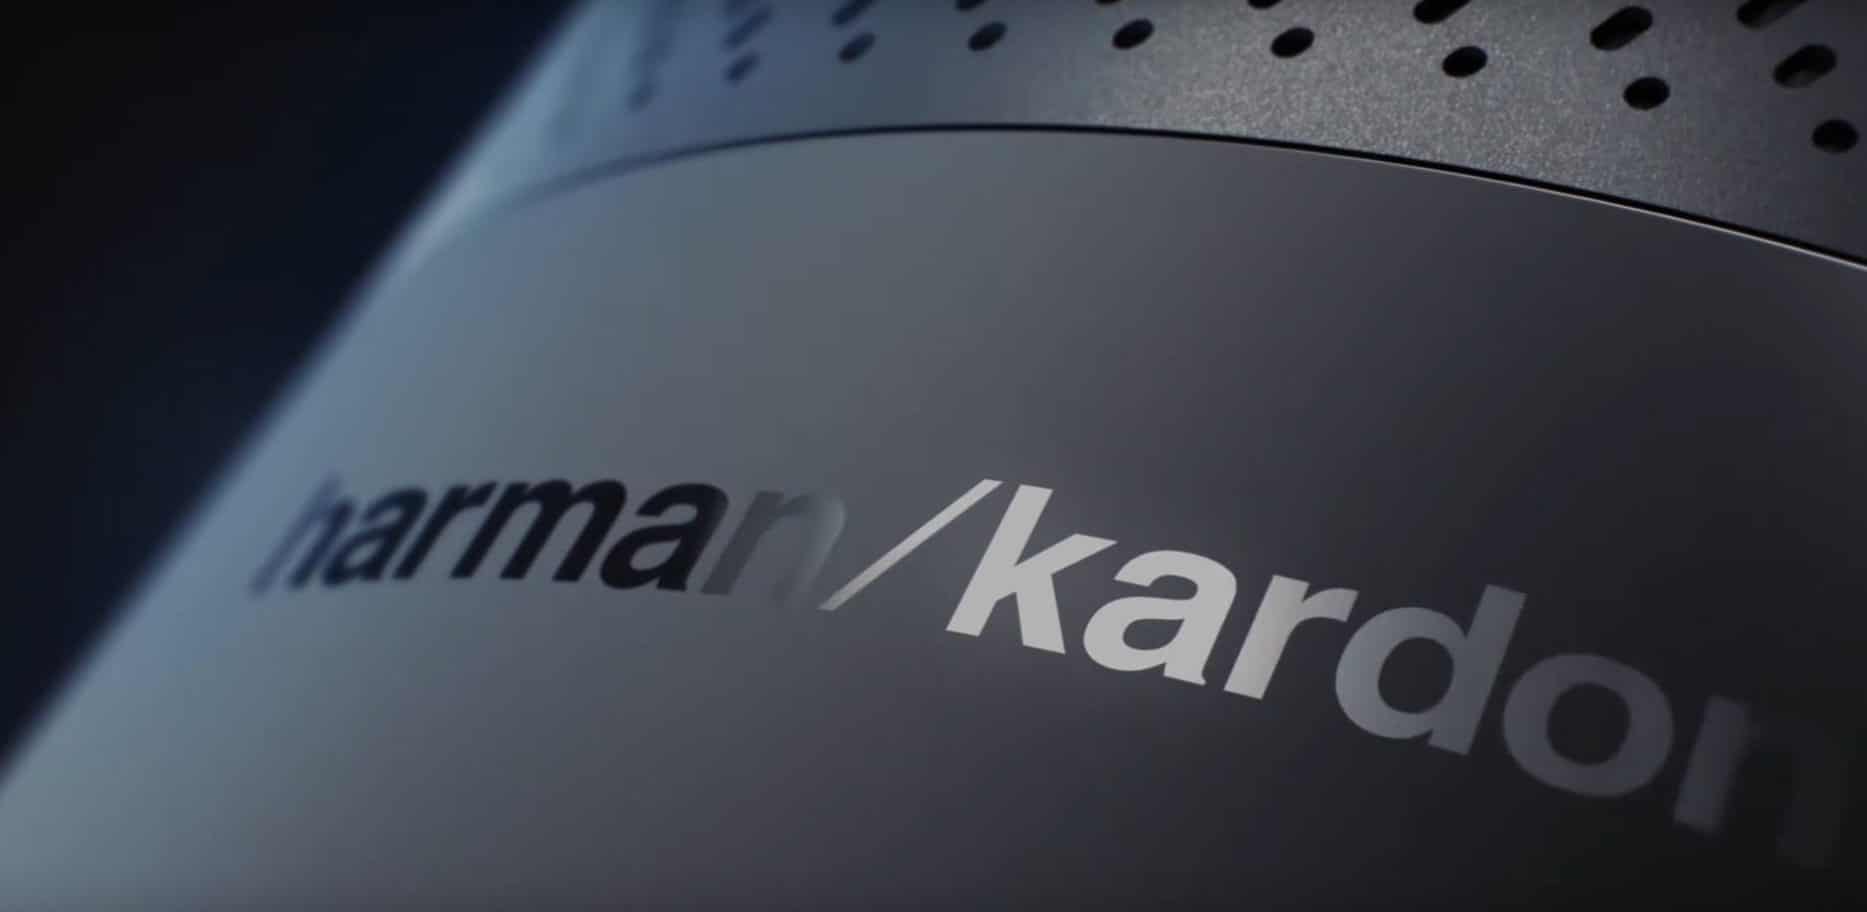 Harman Kardon Cortana